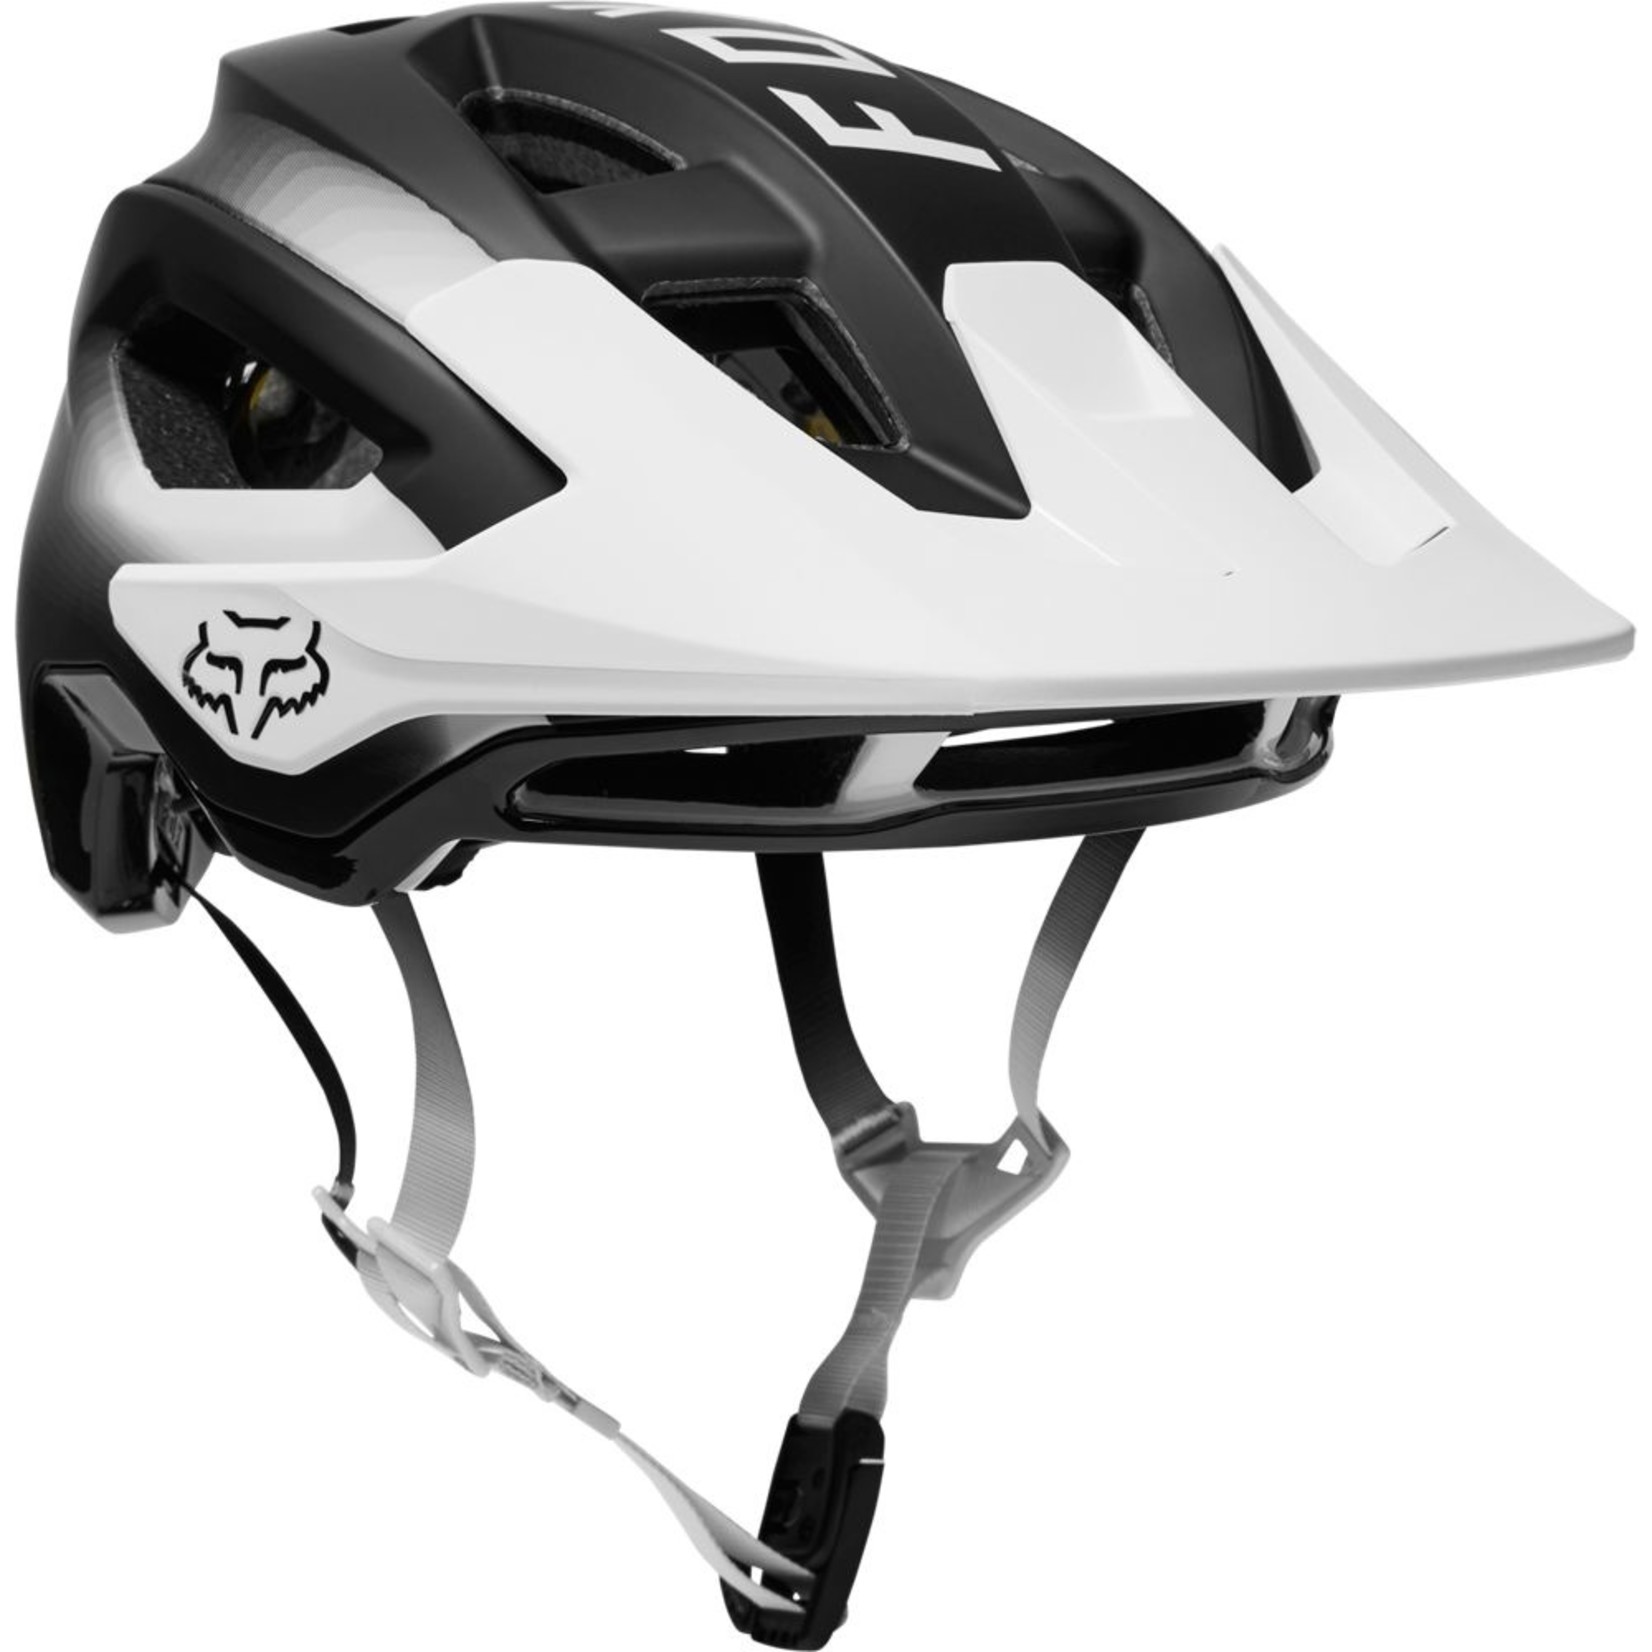 Fox Speedframe Helmet Pro